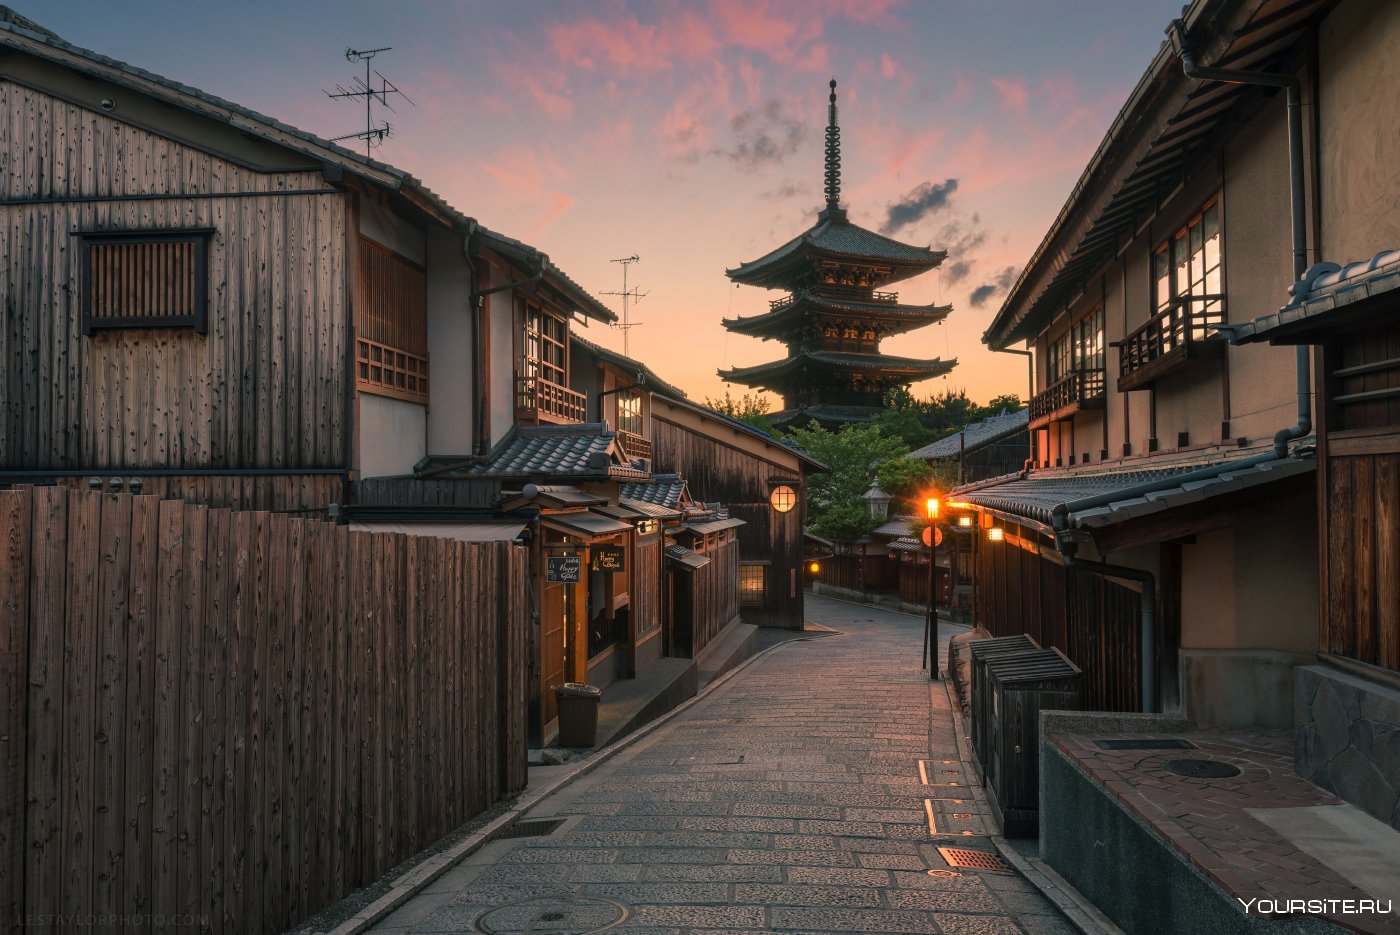 Japanese village. Киото Япония. Киото (город в Японии). Япония Киото улицы. Древней город Японии Киото.